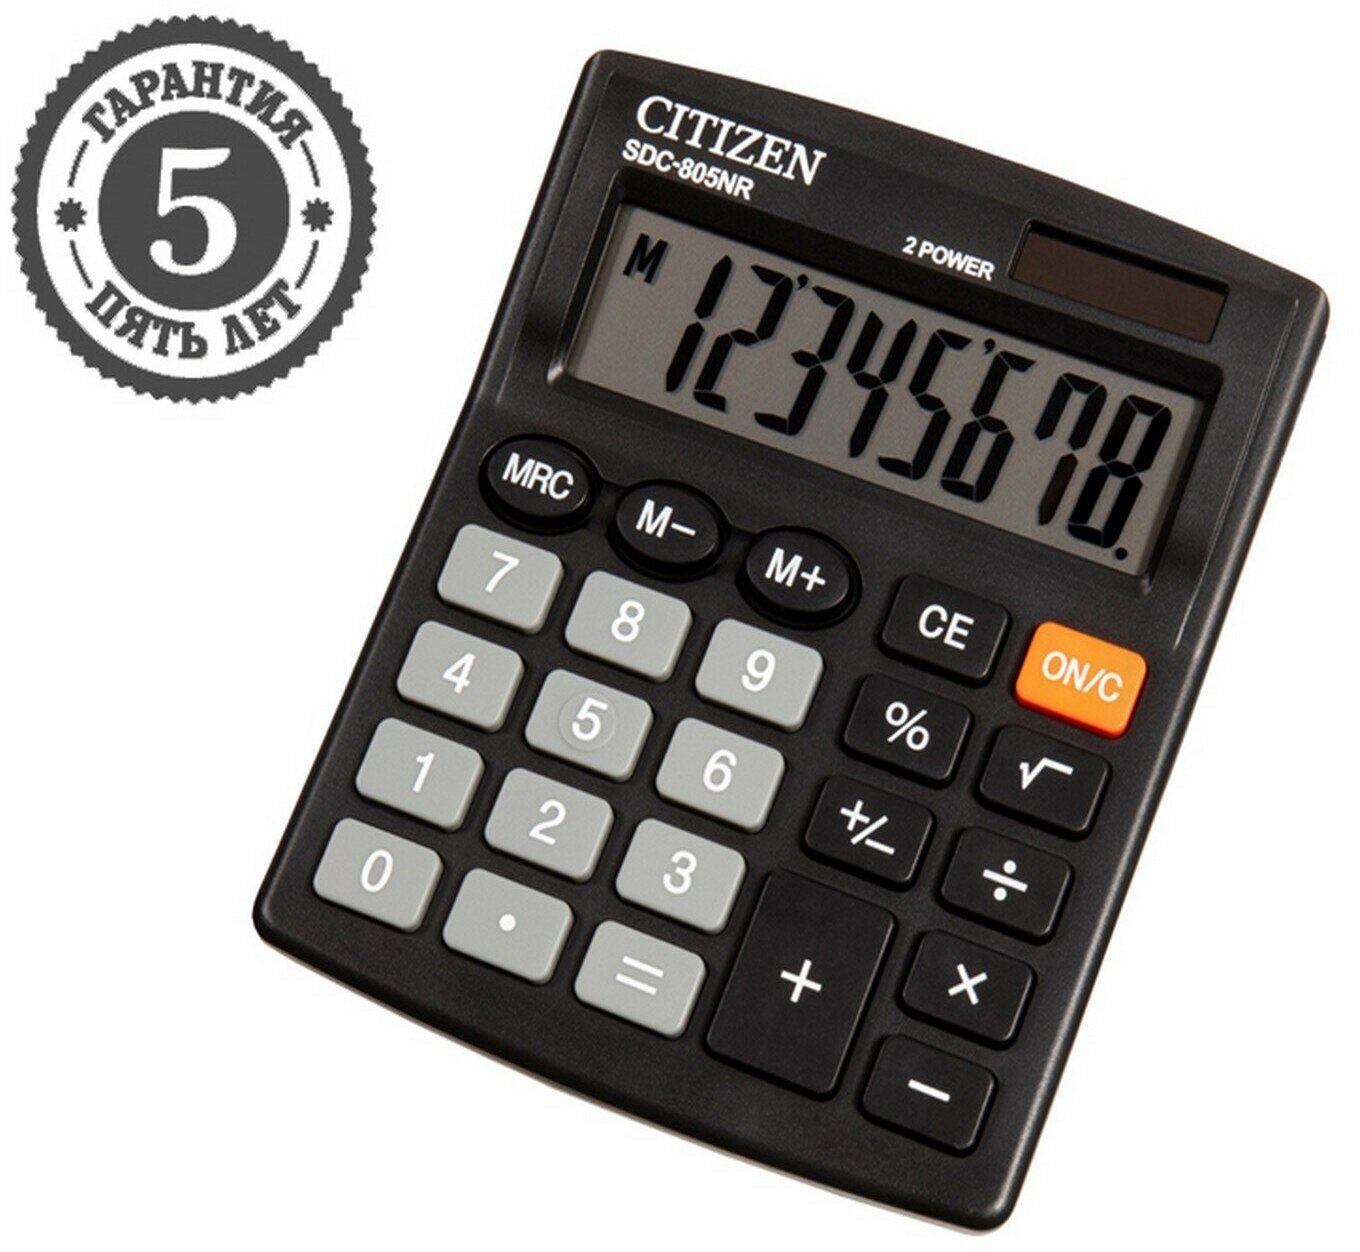 Калькулятор настольный "SDC-805NR", 8-разрядный, 105 х 120 х 21 мм, двойное питание, компактный, чёрный